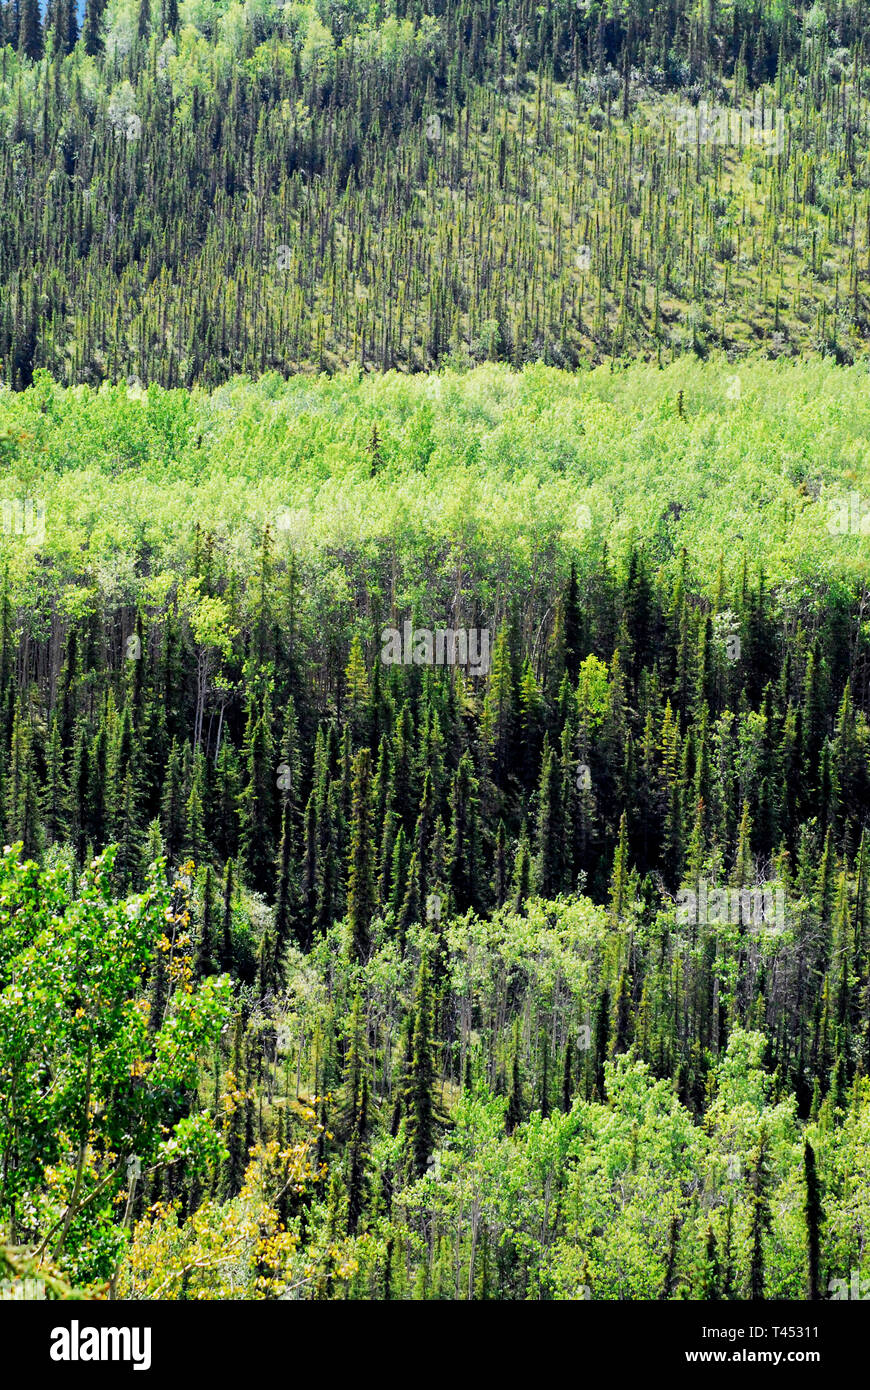 Vert sur vert. Un avis attirant l'œil des forêts qui créent un modèle en couches. Photographiée près de Parc National de Denali en Alaska, USA Banque D'Images